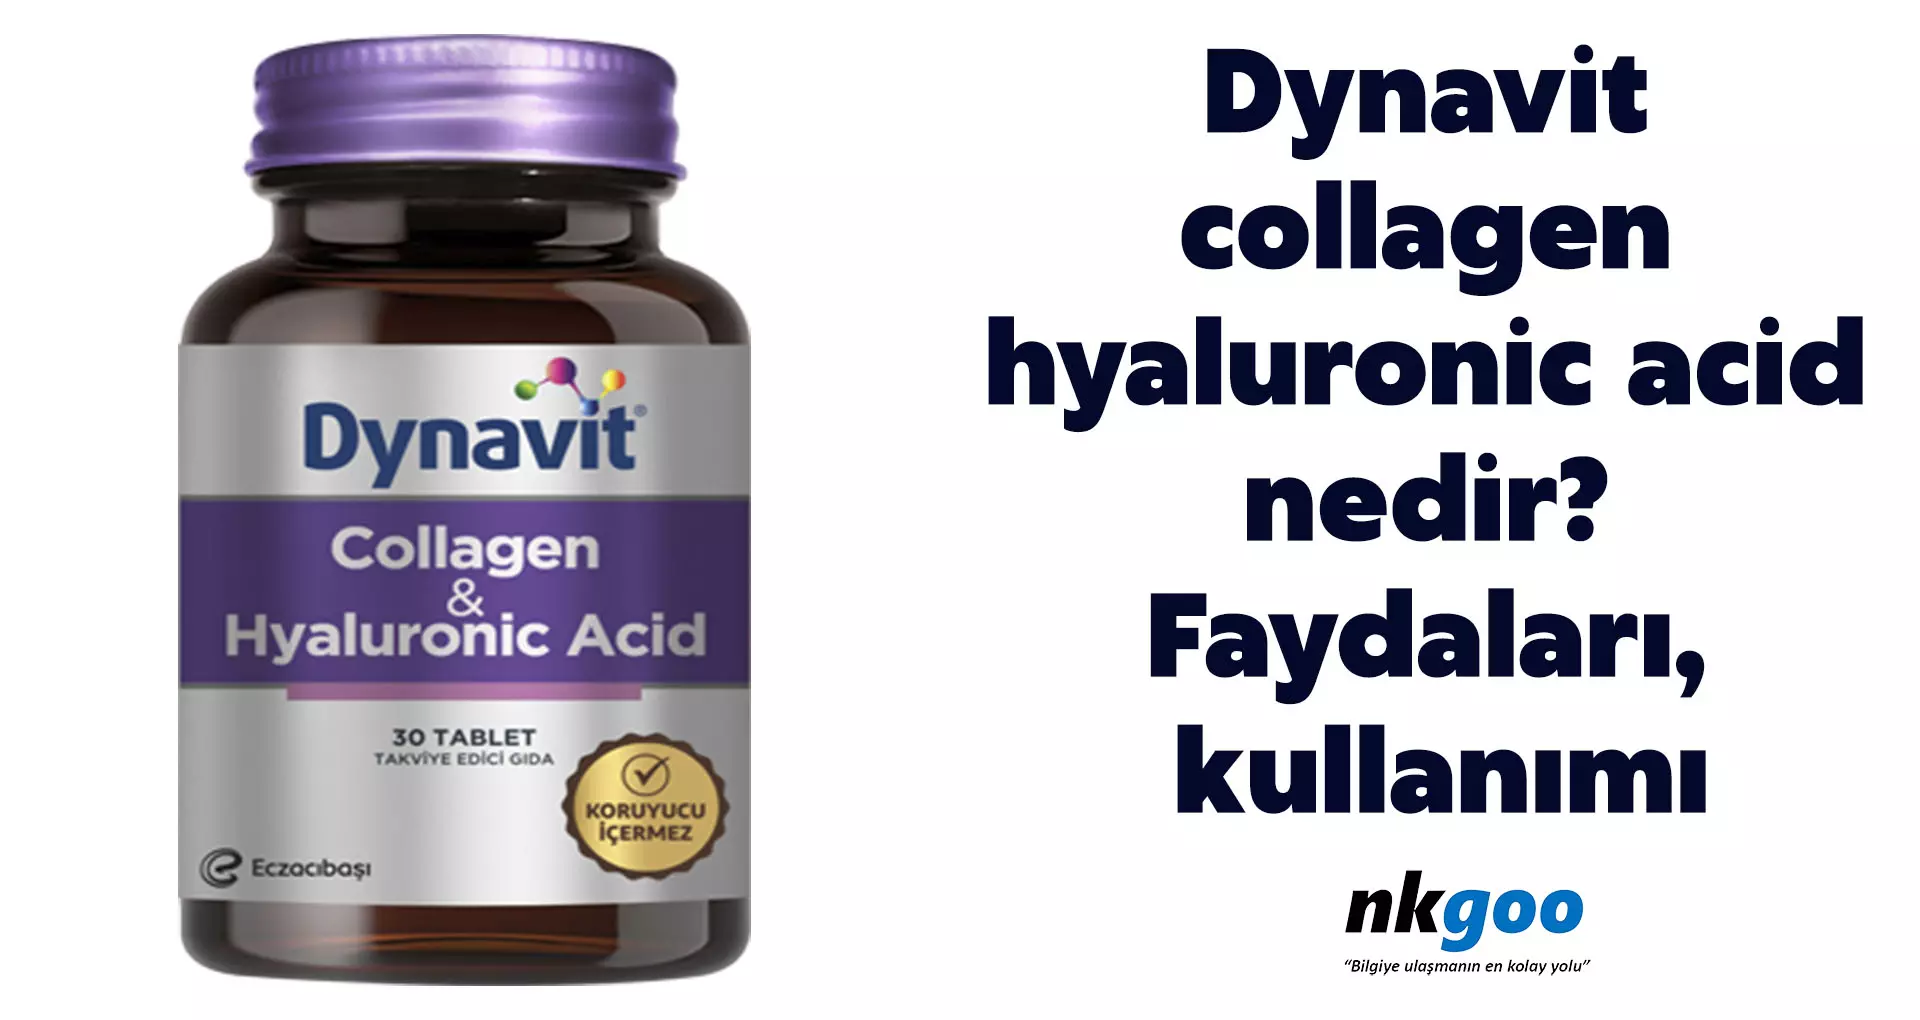 Dynavit collagen hyaluronic acid nedir? Faydaları